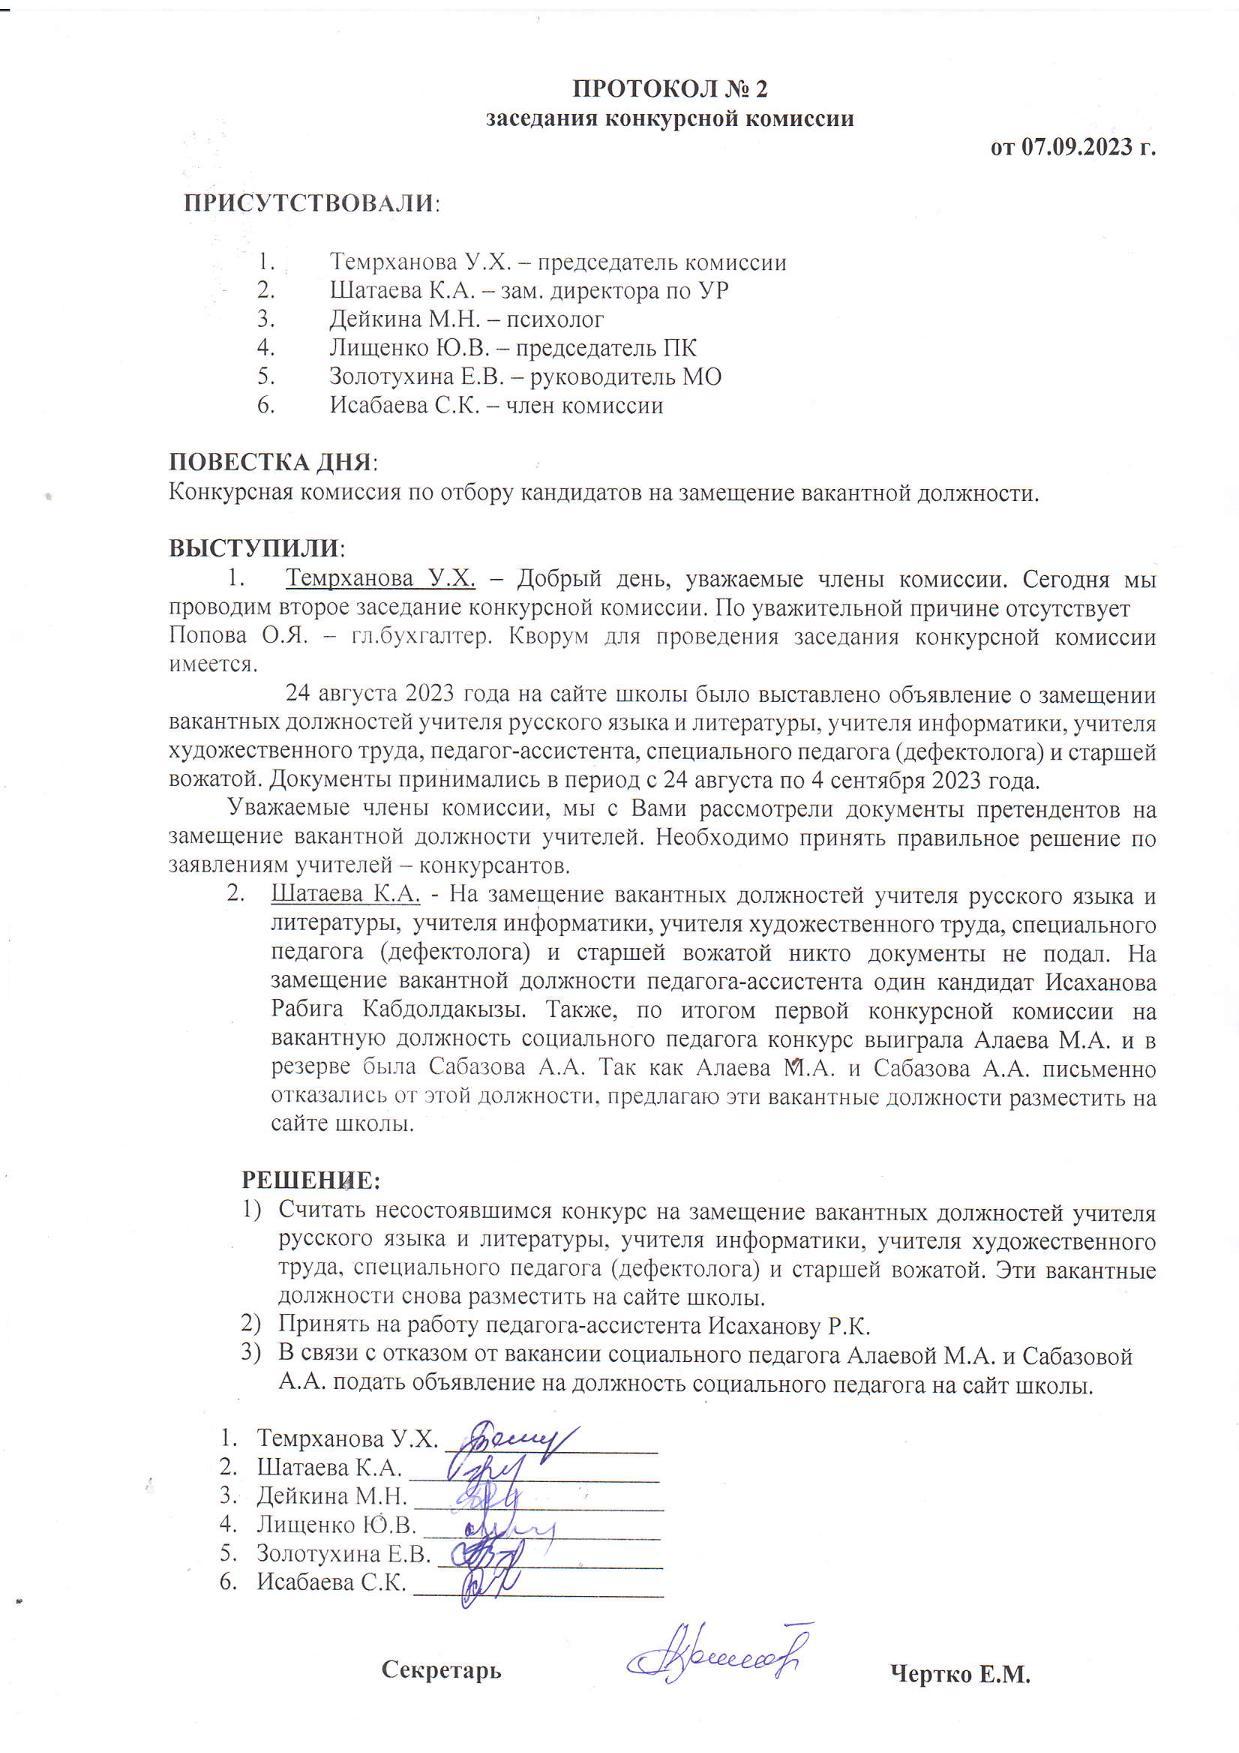 ПРОТОКОЛ №2 заседания конкурсной комиссии от 07.09.2023